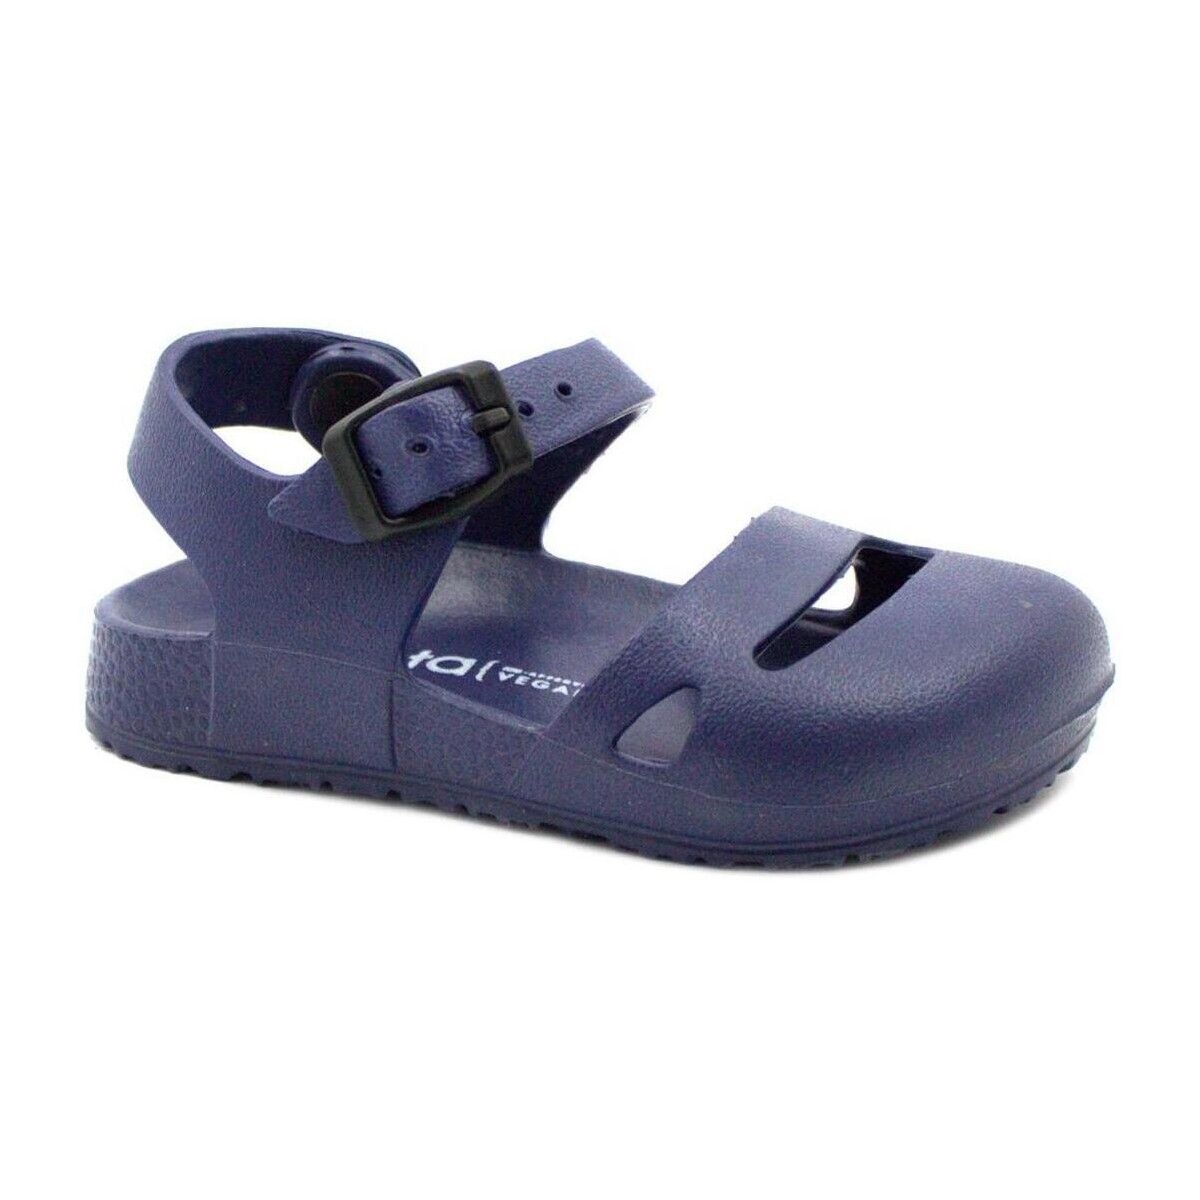 Sapatos Criança Sandálias Cienta CIE-CCC-1073000-77 Azul